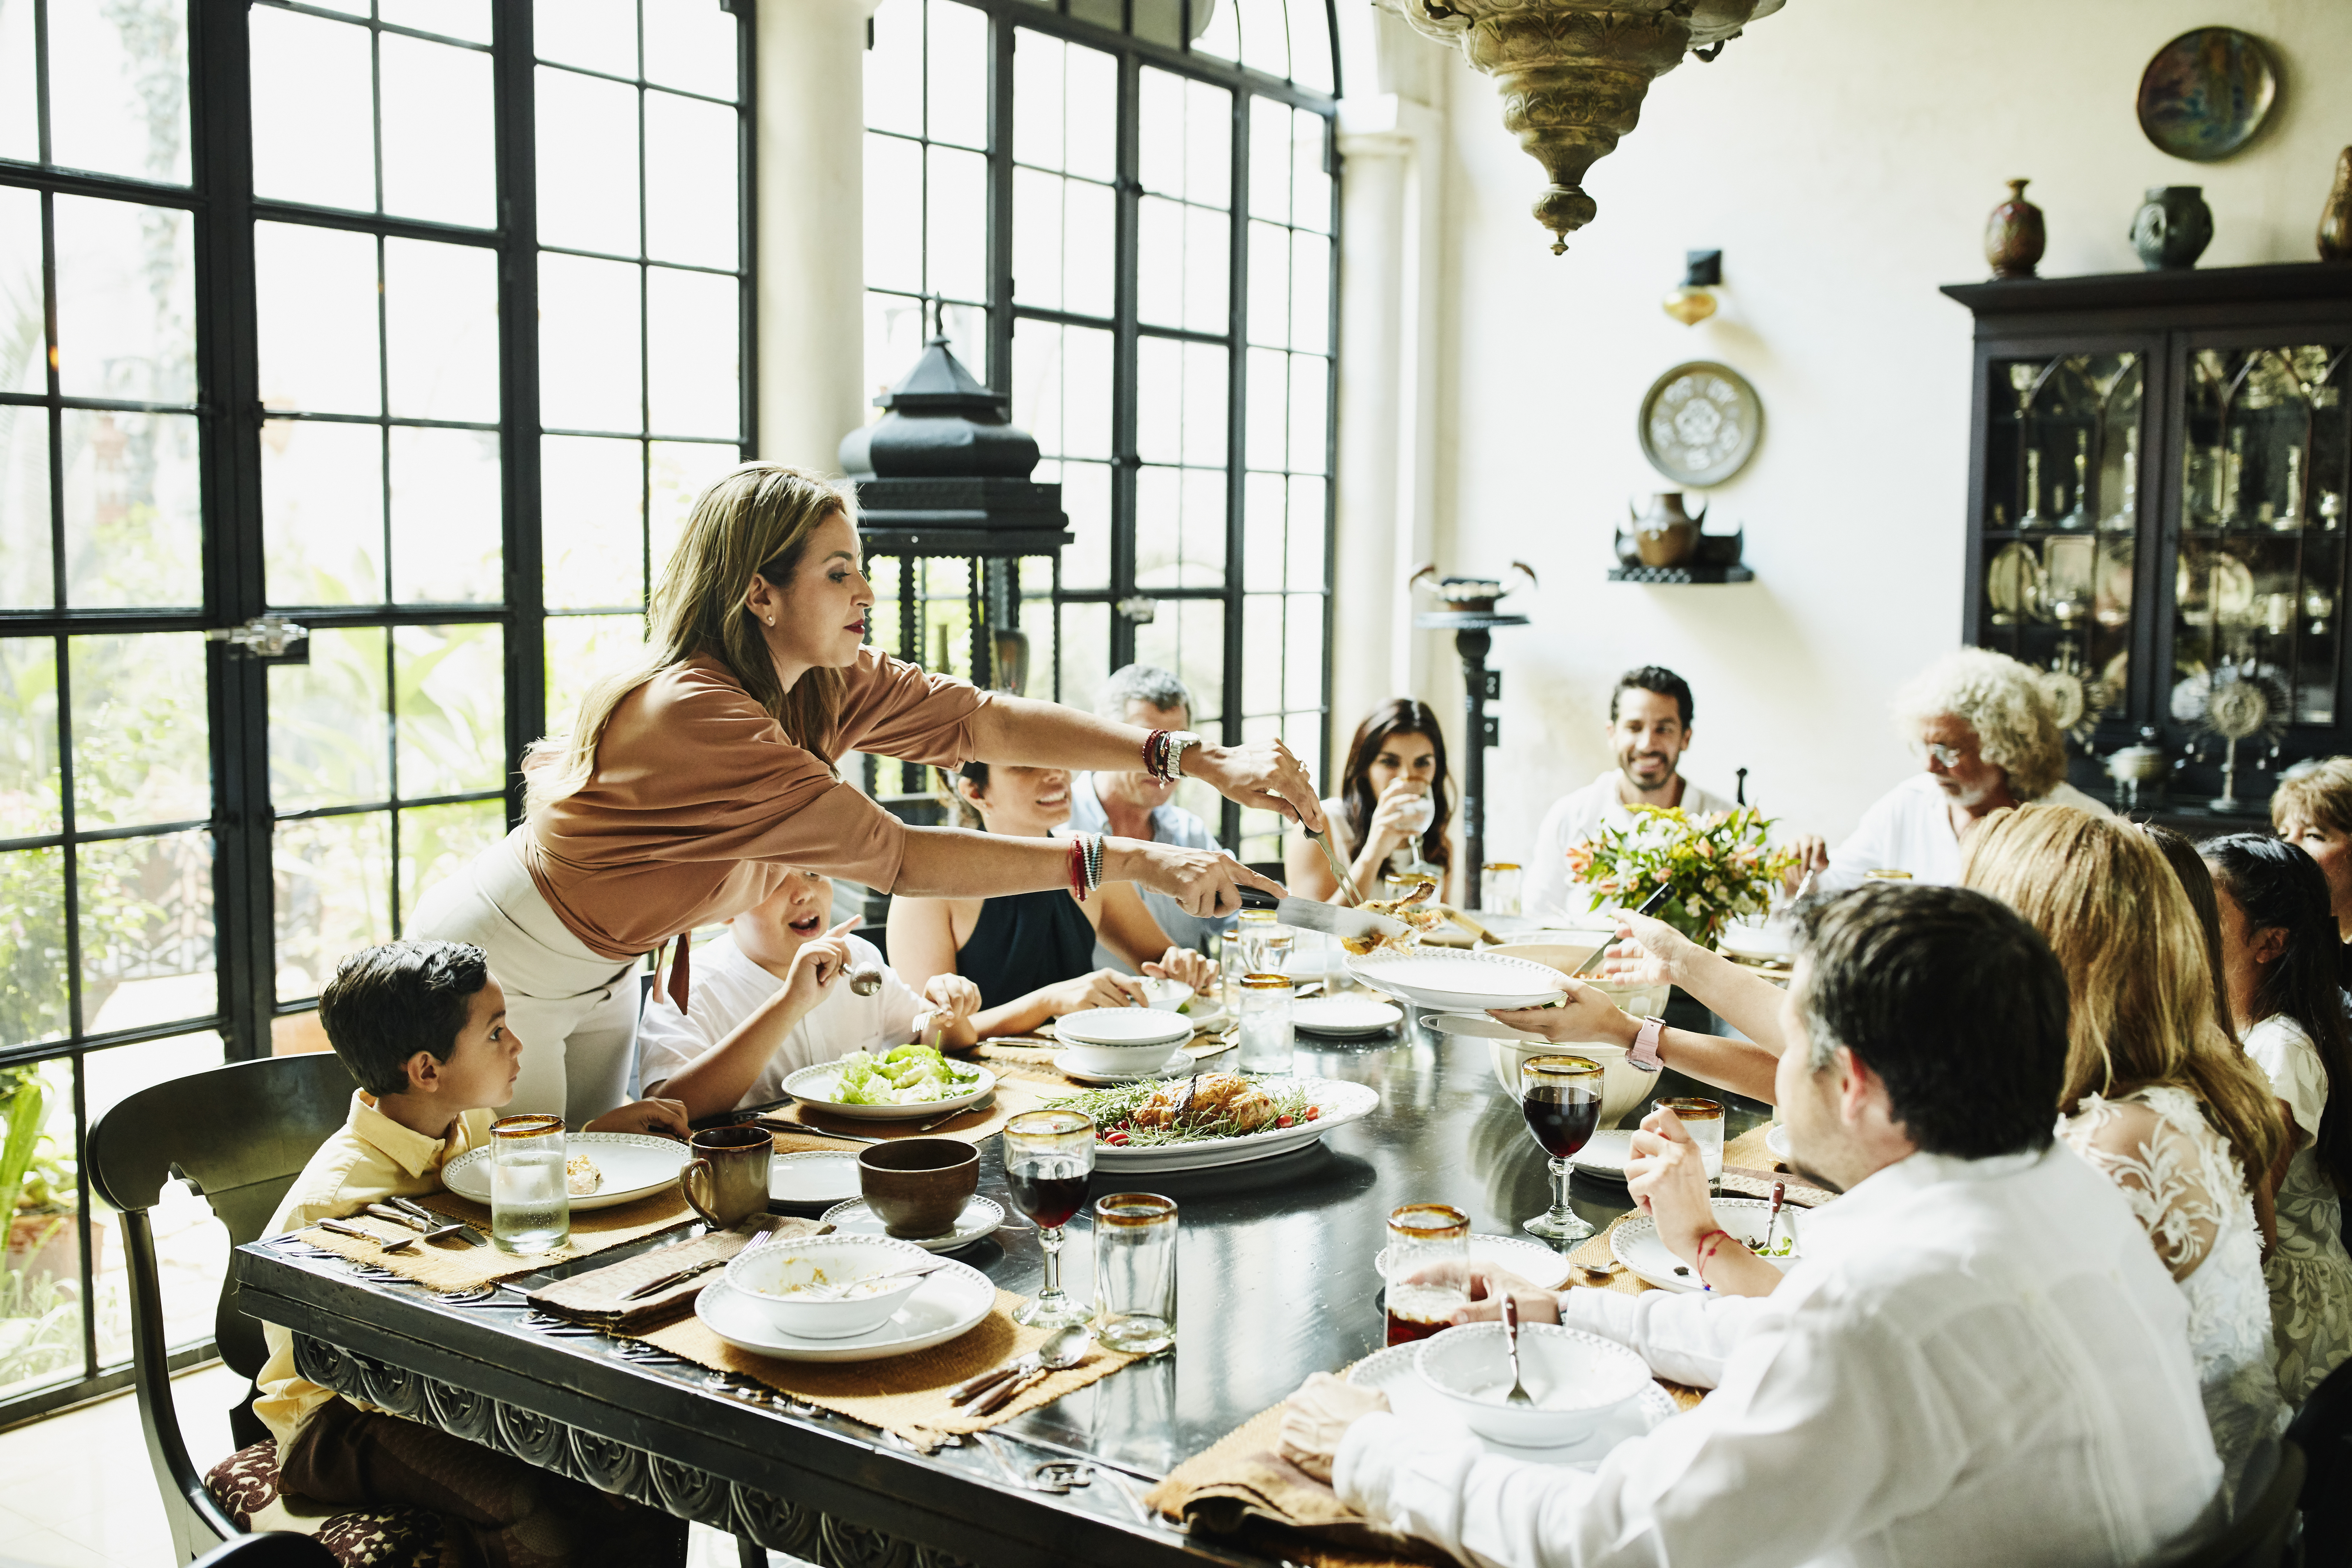 Une famille réunie autour d'une table lors d’un dîner | Source : Getty Images